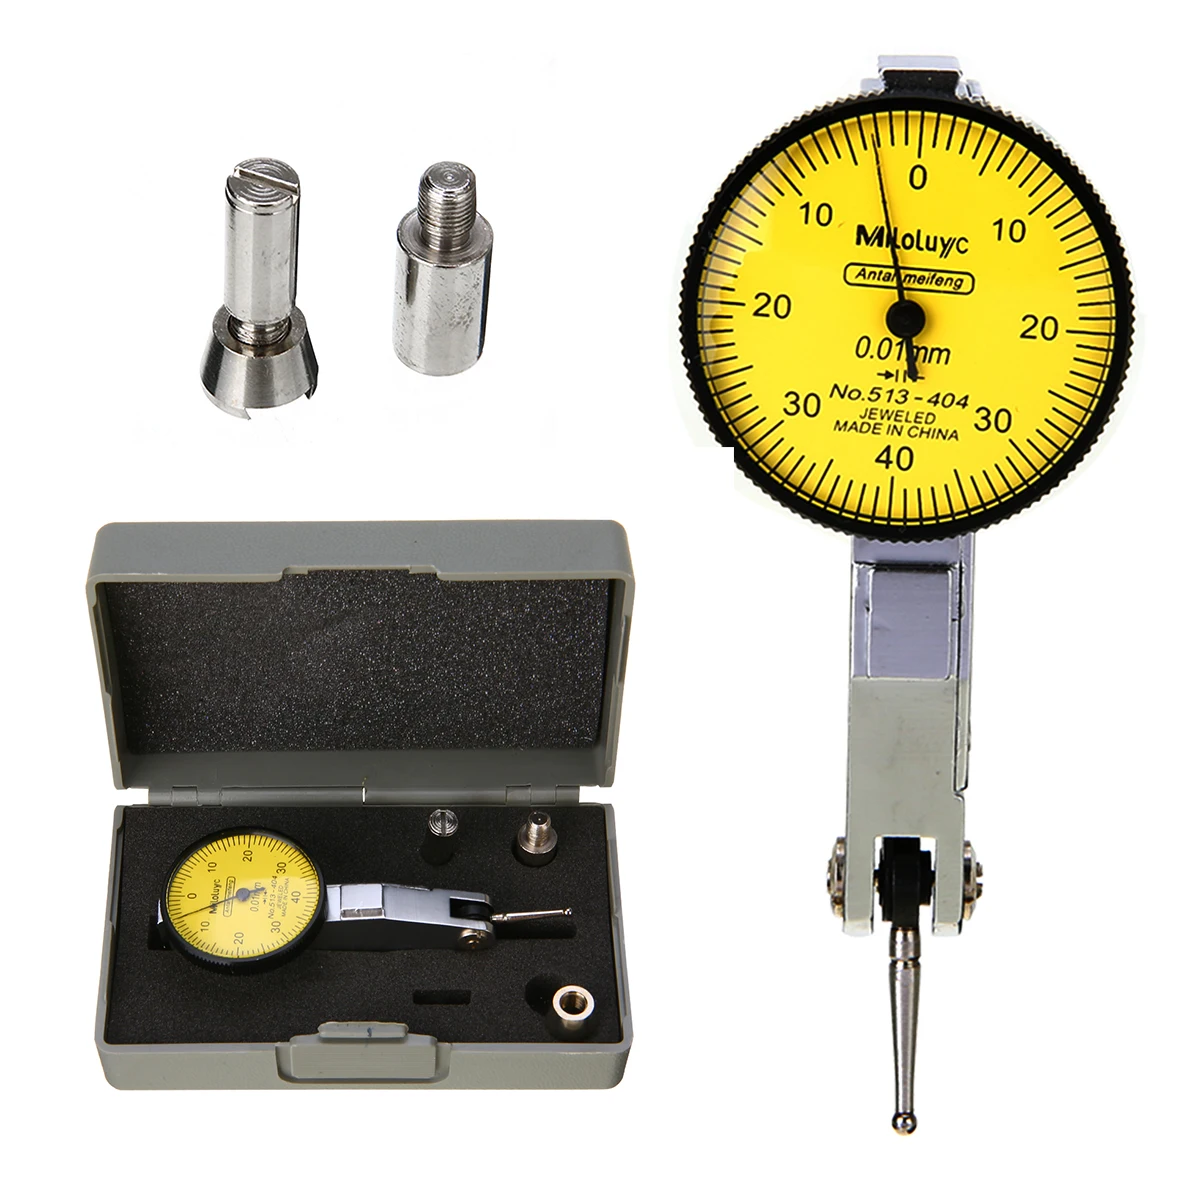 Высокая точность метрический измерительный инструмент металлический мини-шкала индикатор проверки ing с рельсами ласточкин хвост 0-40-0 0,01 мм с коробкой